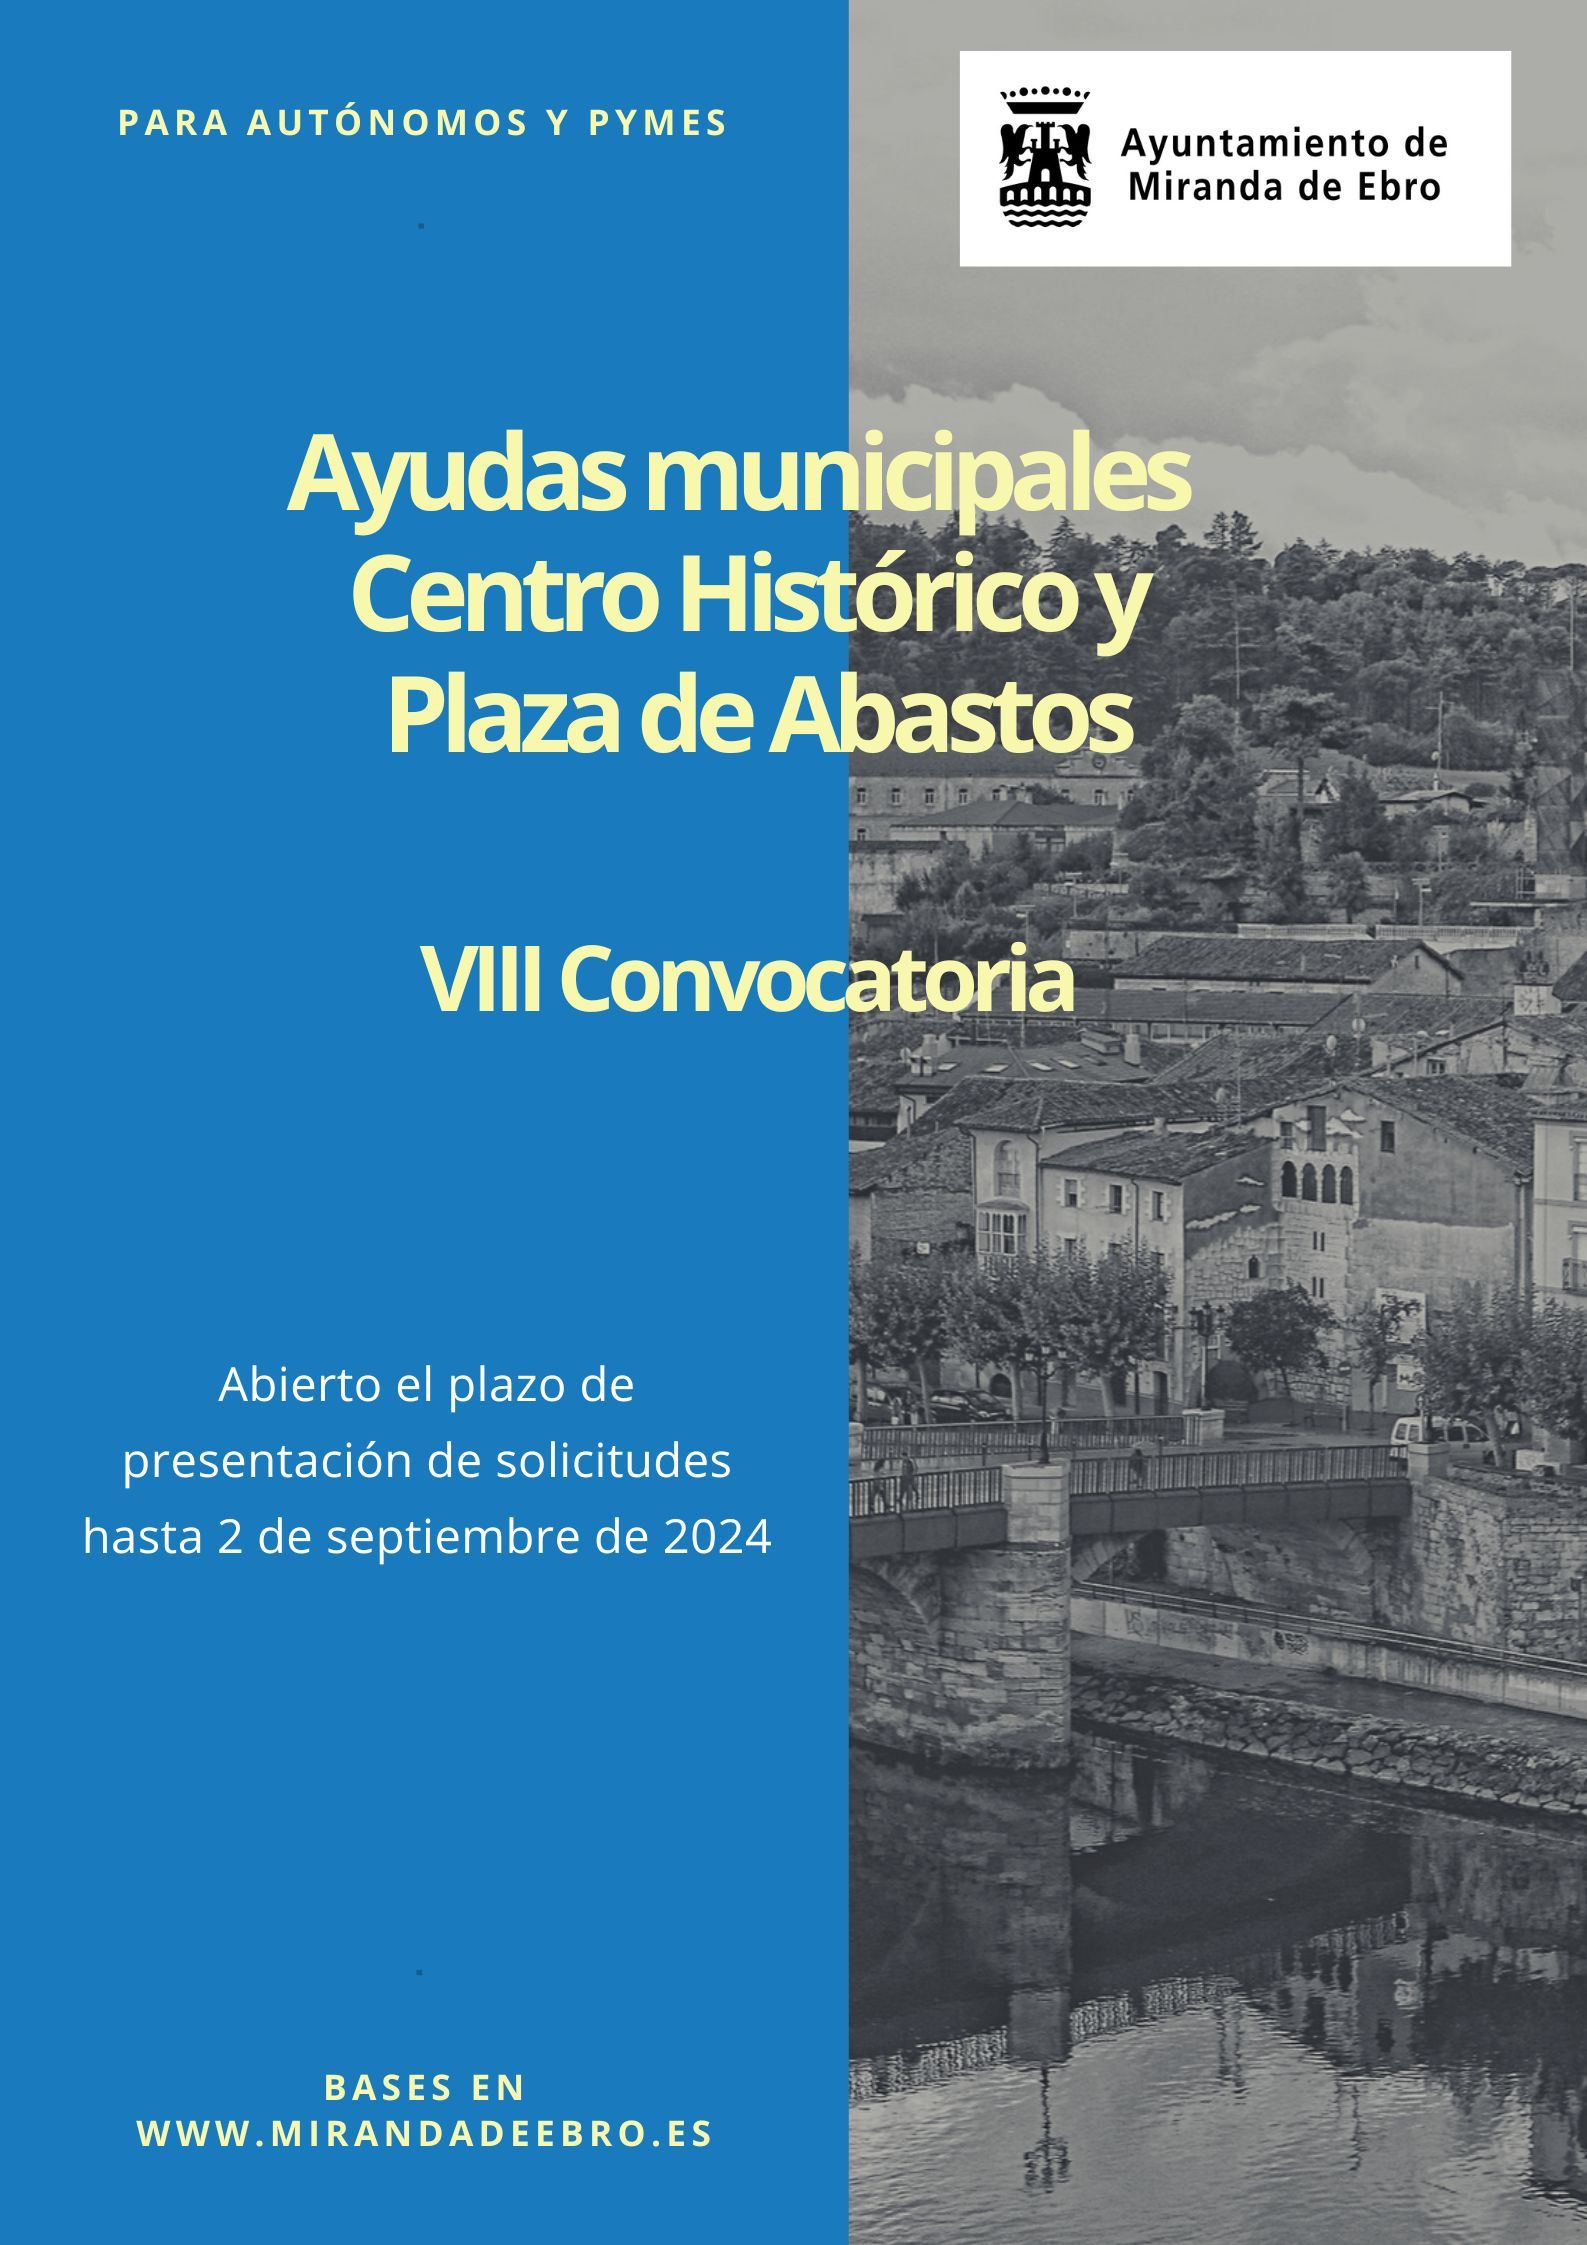 Las solicitudes para ayudas municipales a actividades en Centro Histórico y Plaza de Abastos pueden presentarse hasta 2 de septiembre